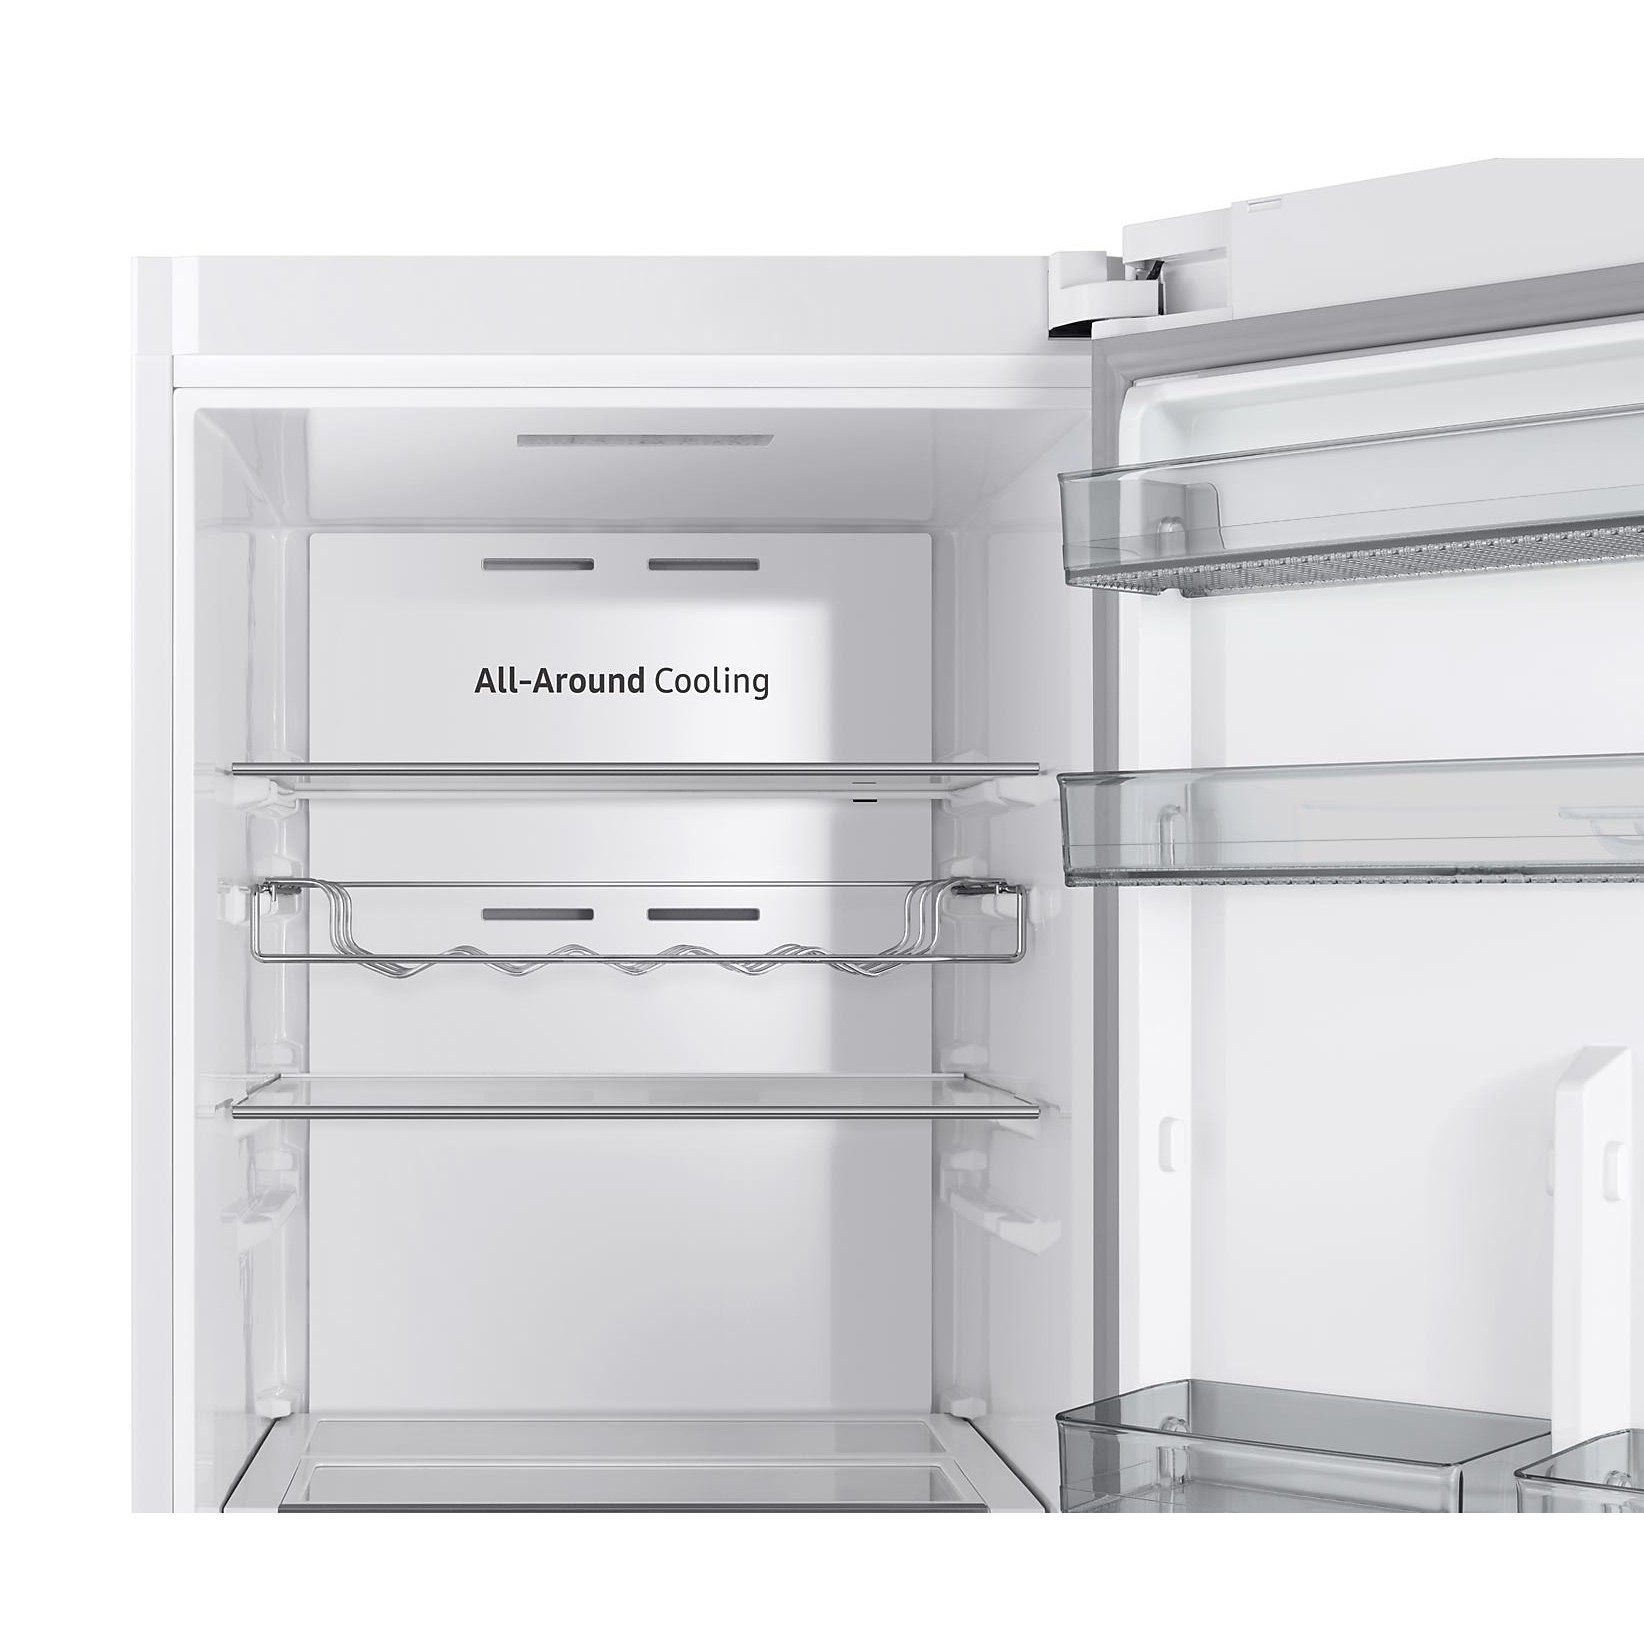 Холодильники Samsung RR39C7BJ5WW белый